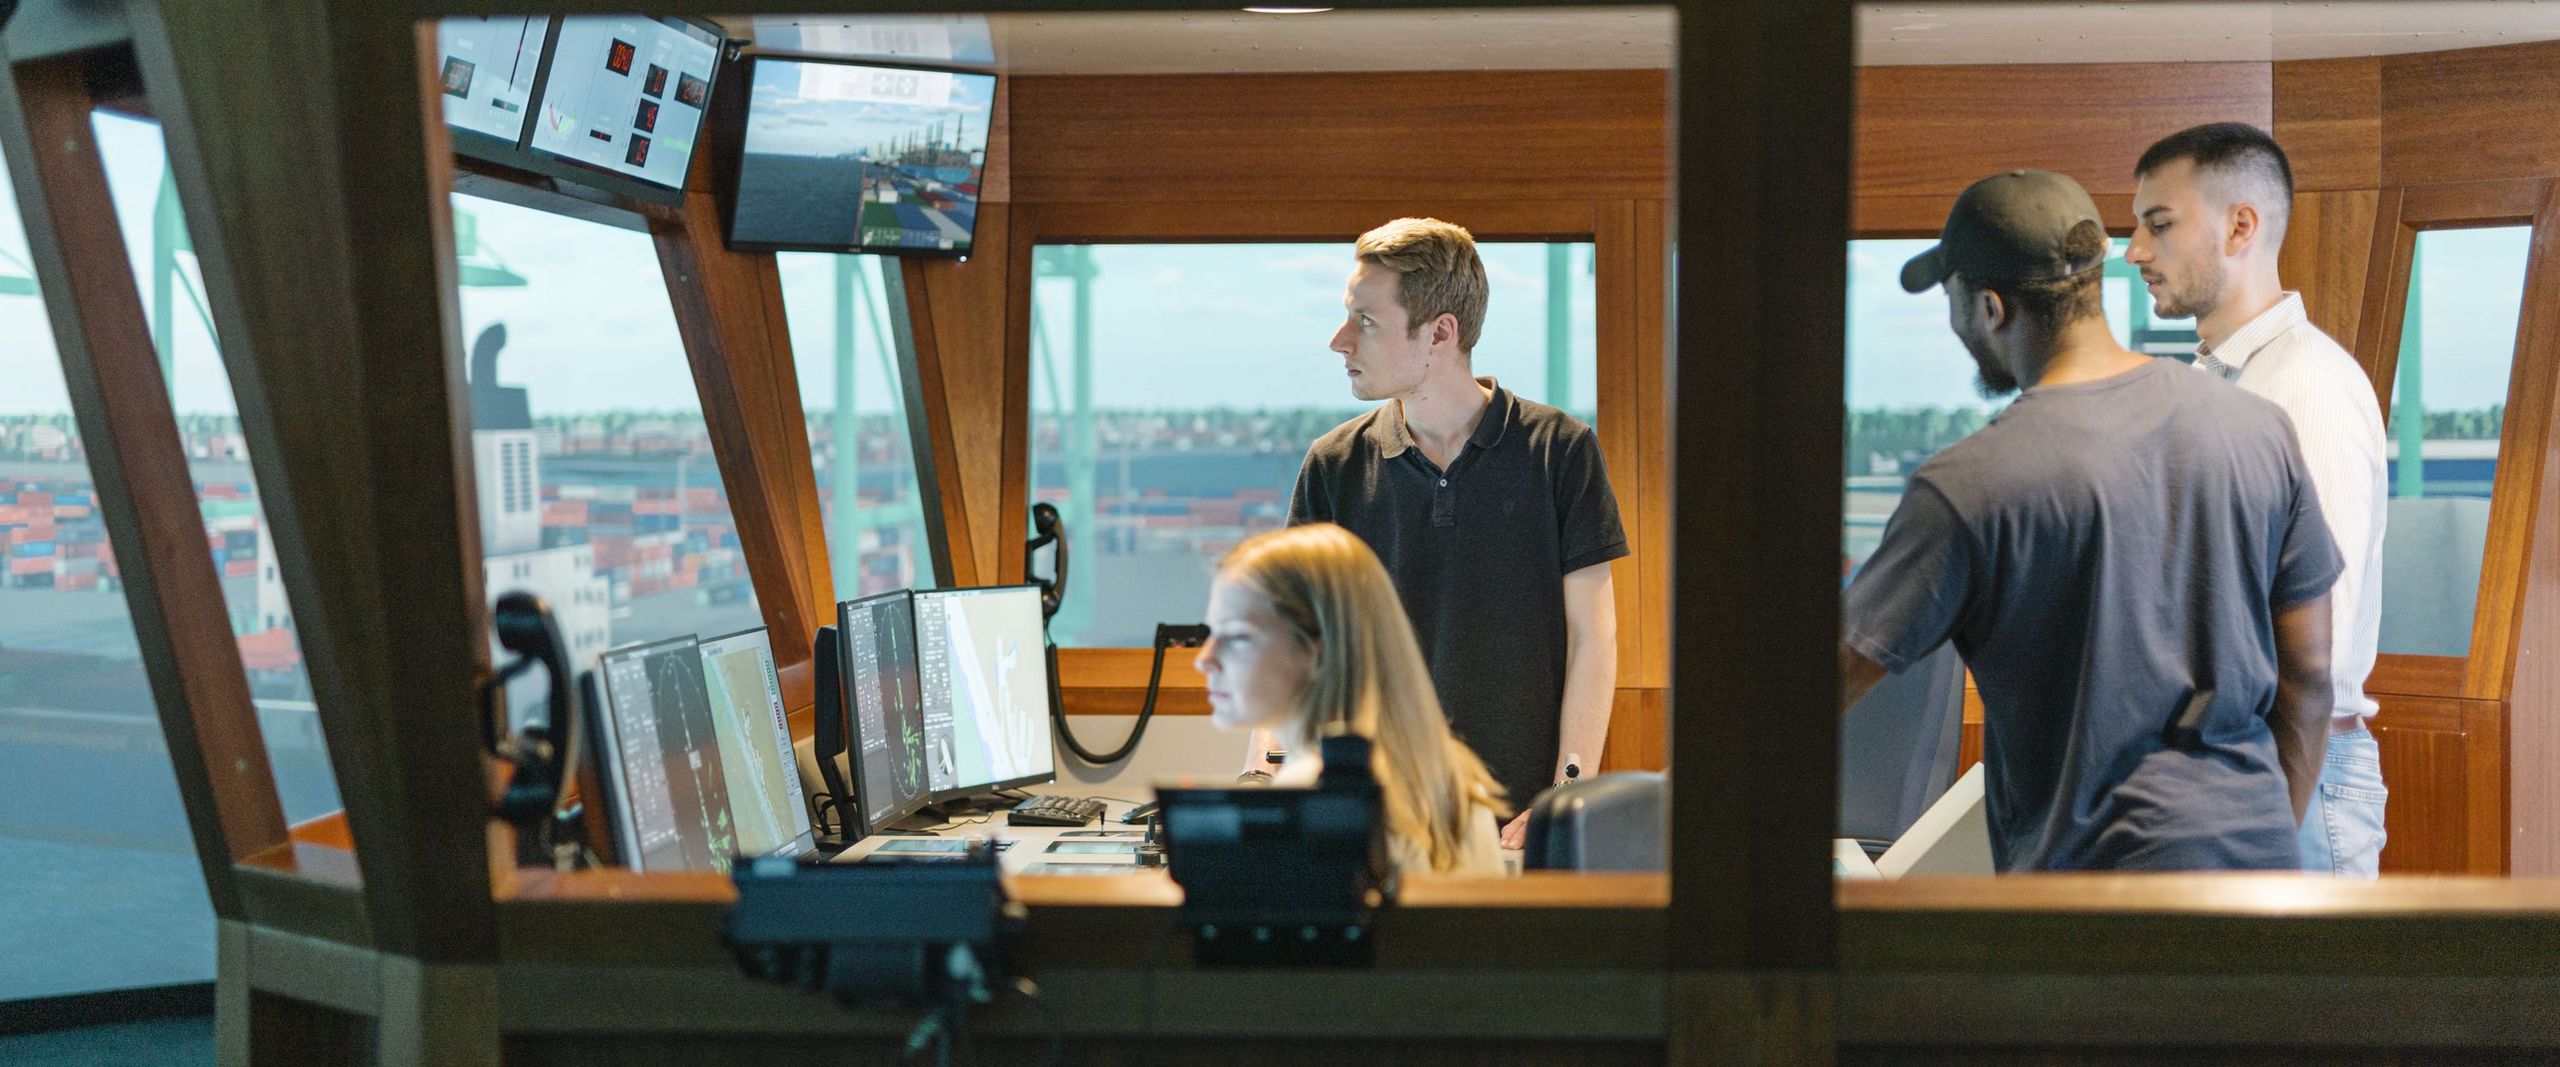 Junge Männer und eine Frau sitzen und arbeiten in einem Schiffssimulator.